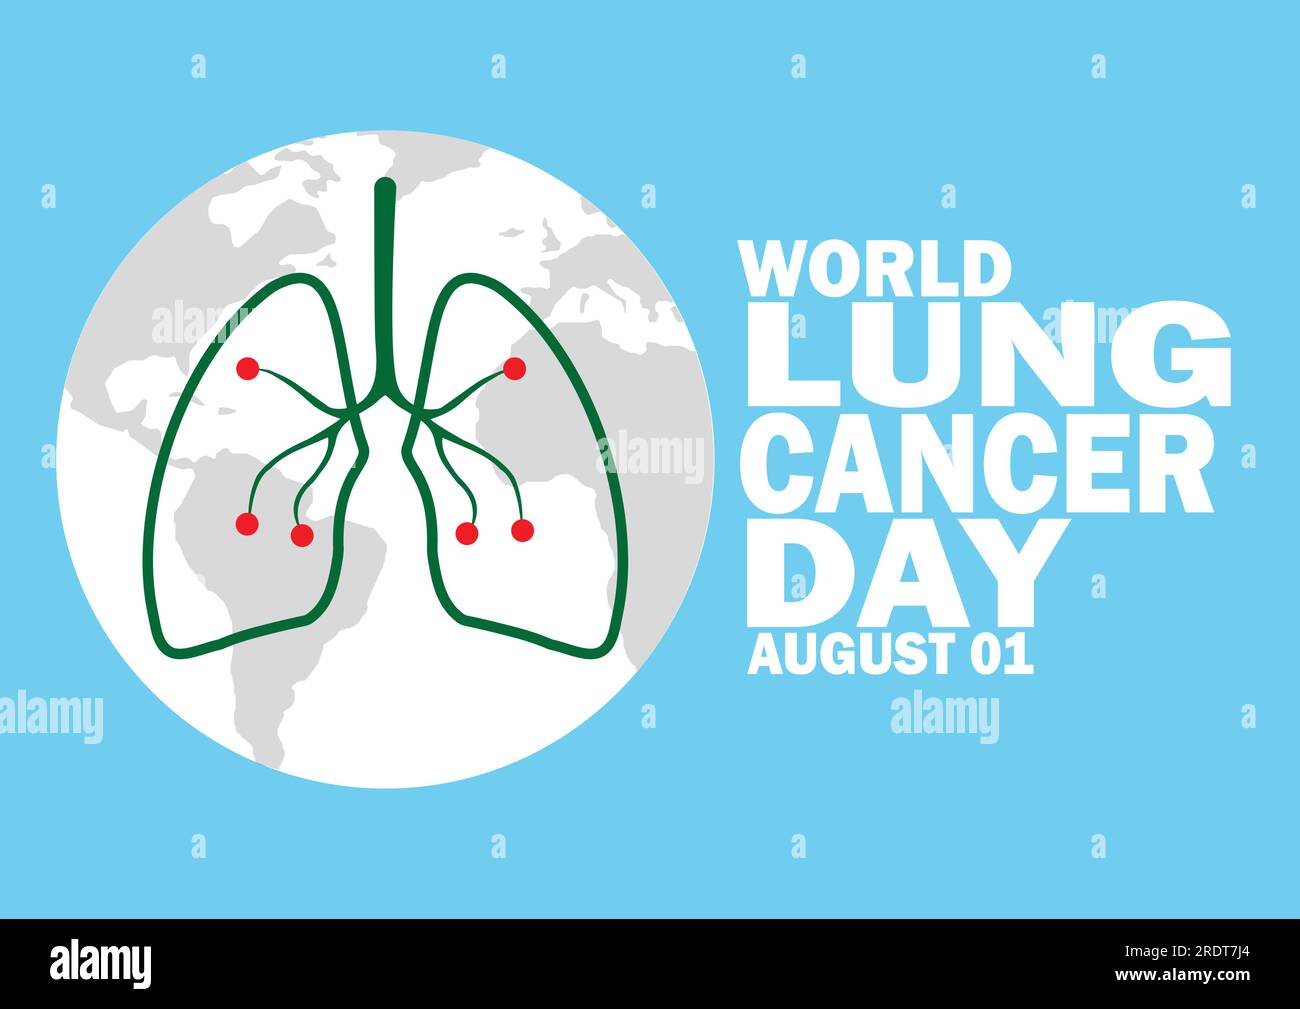 Illustration Des World Lung Cancer Day Vector Template Design. August 01. Geeignet für Grußkarten, Poster und Banner Stock Vektor